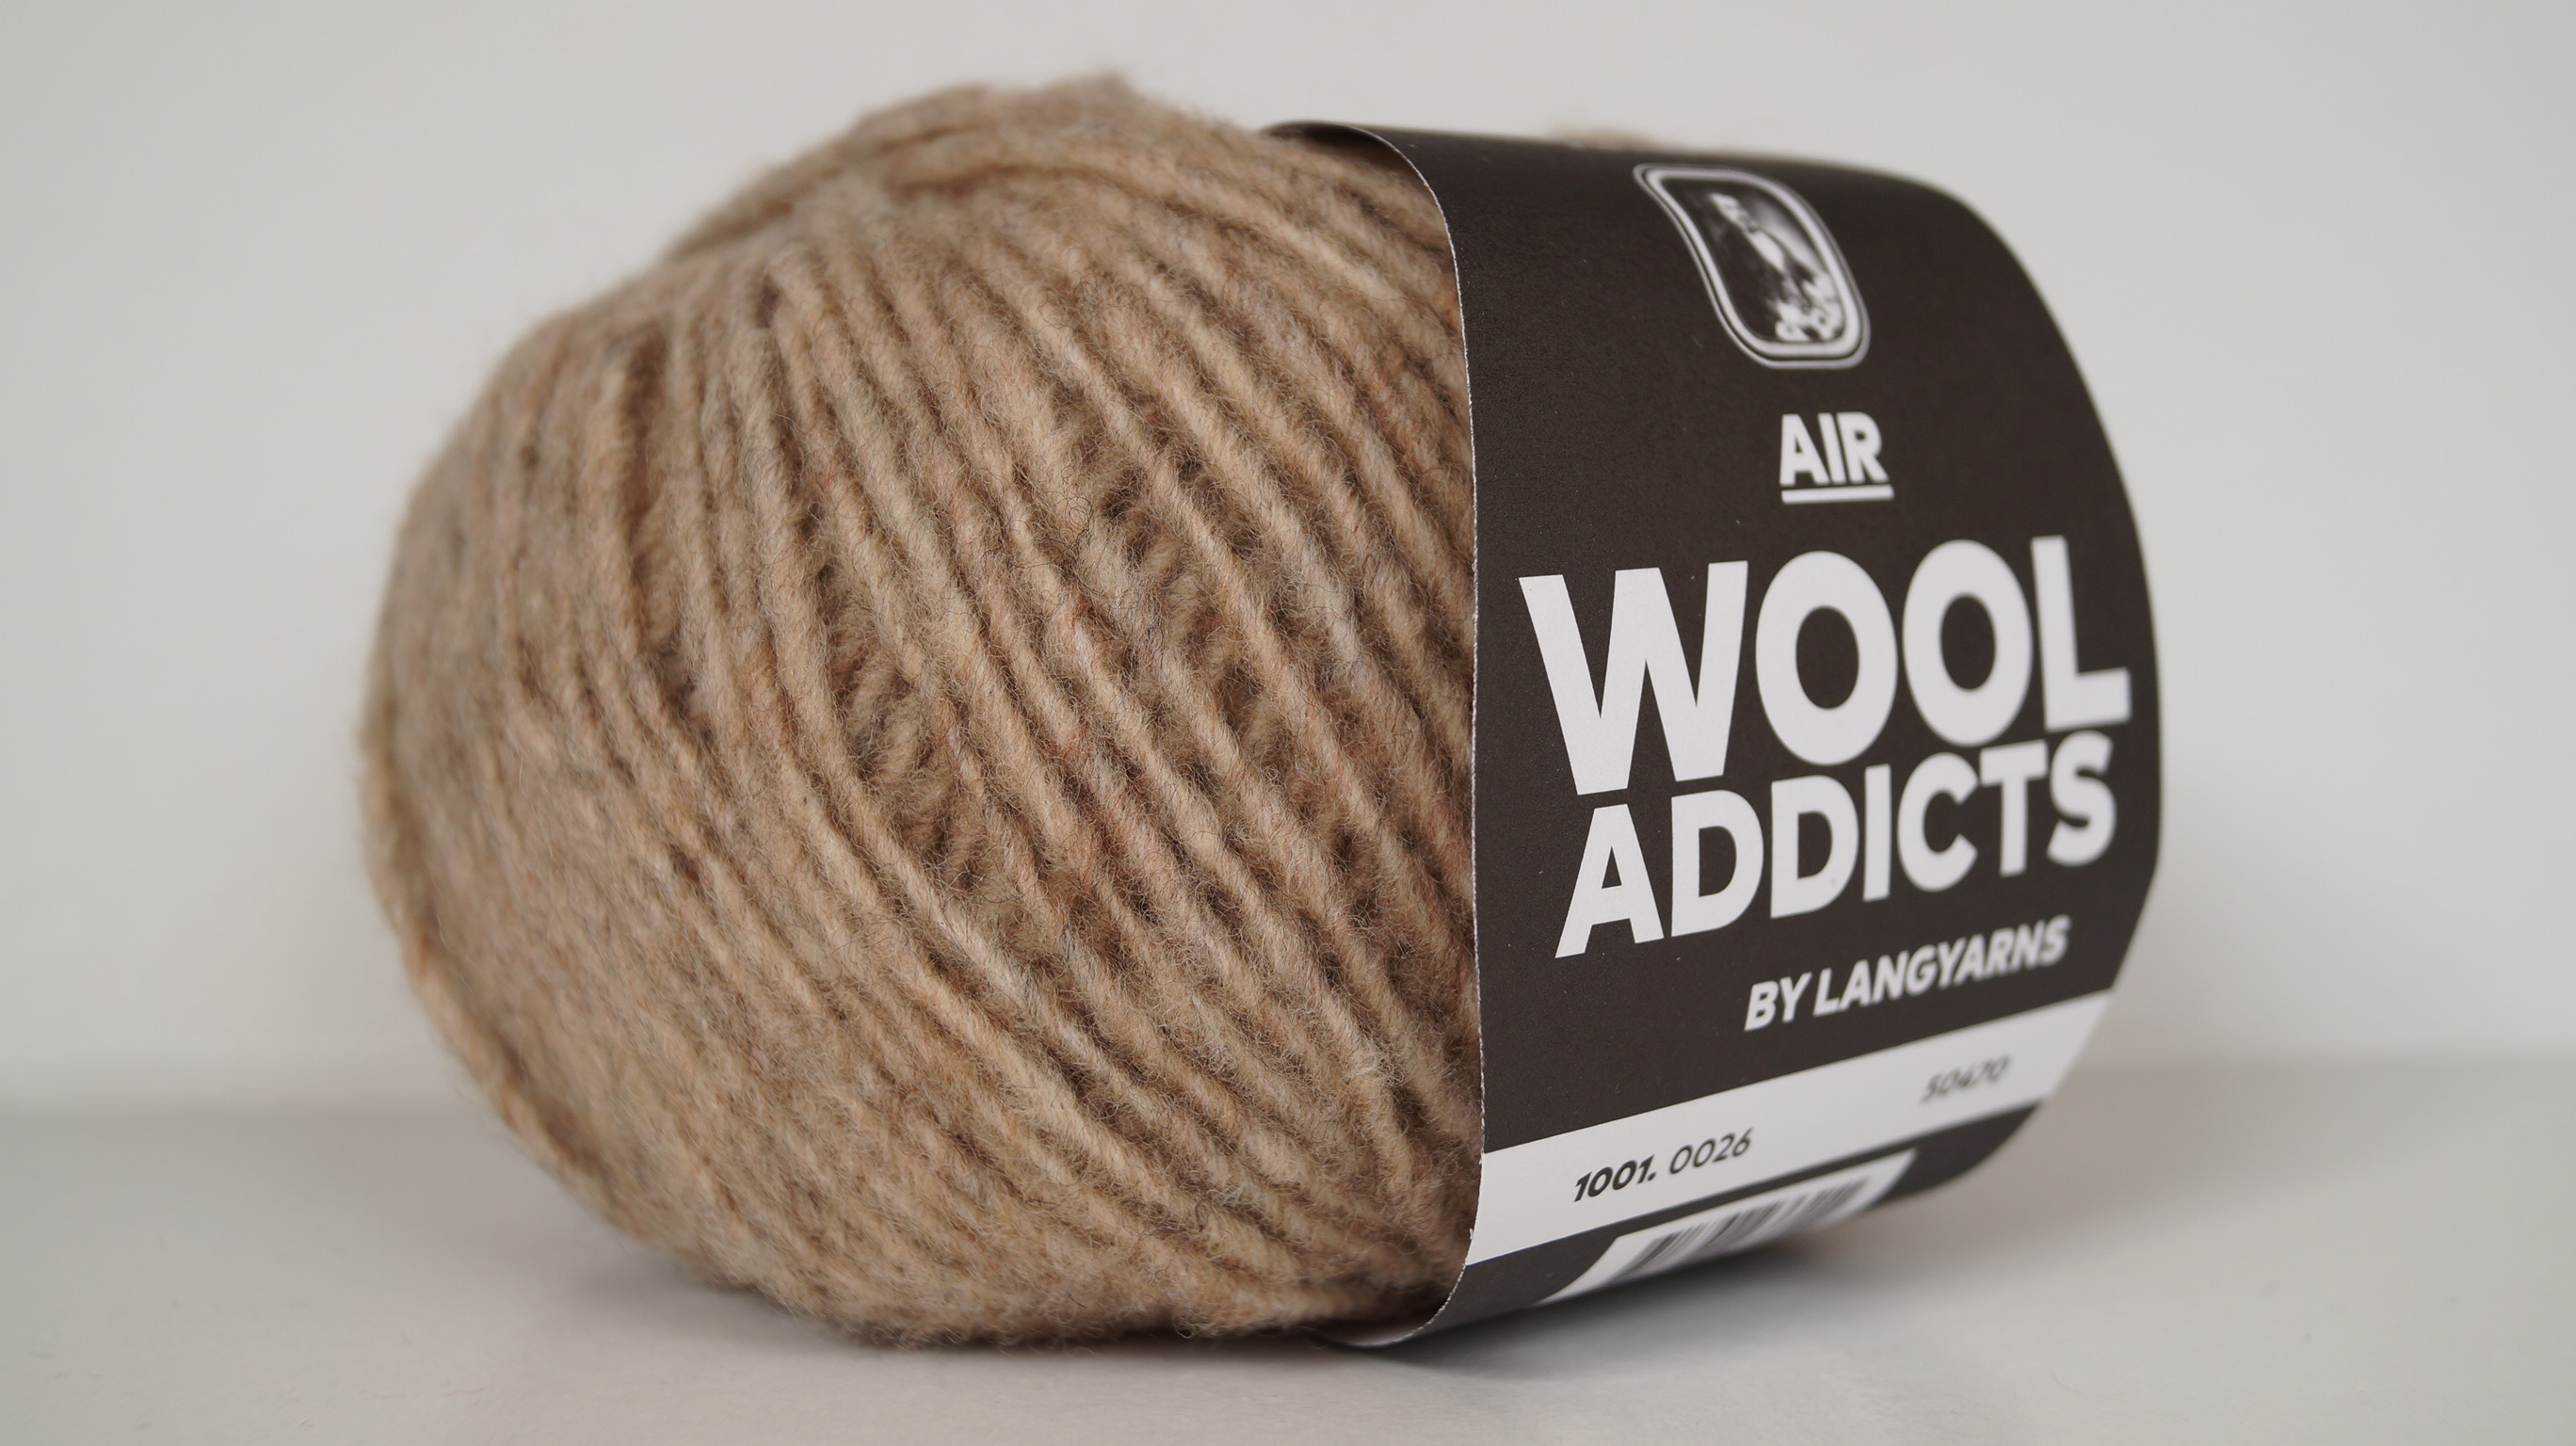 AIR wool addicts